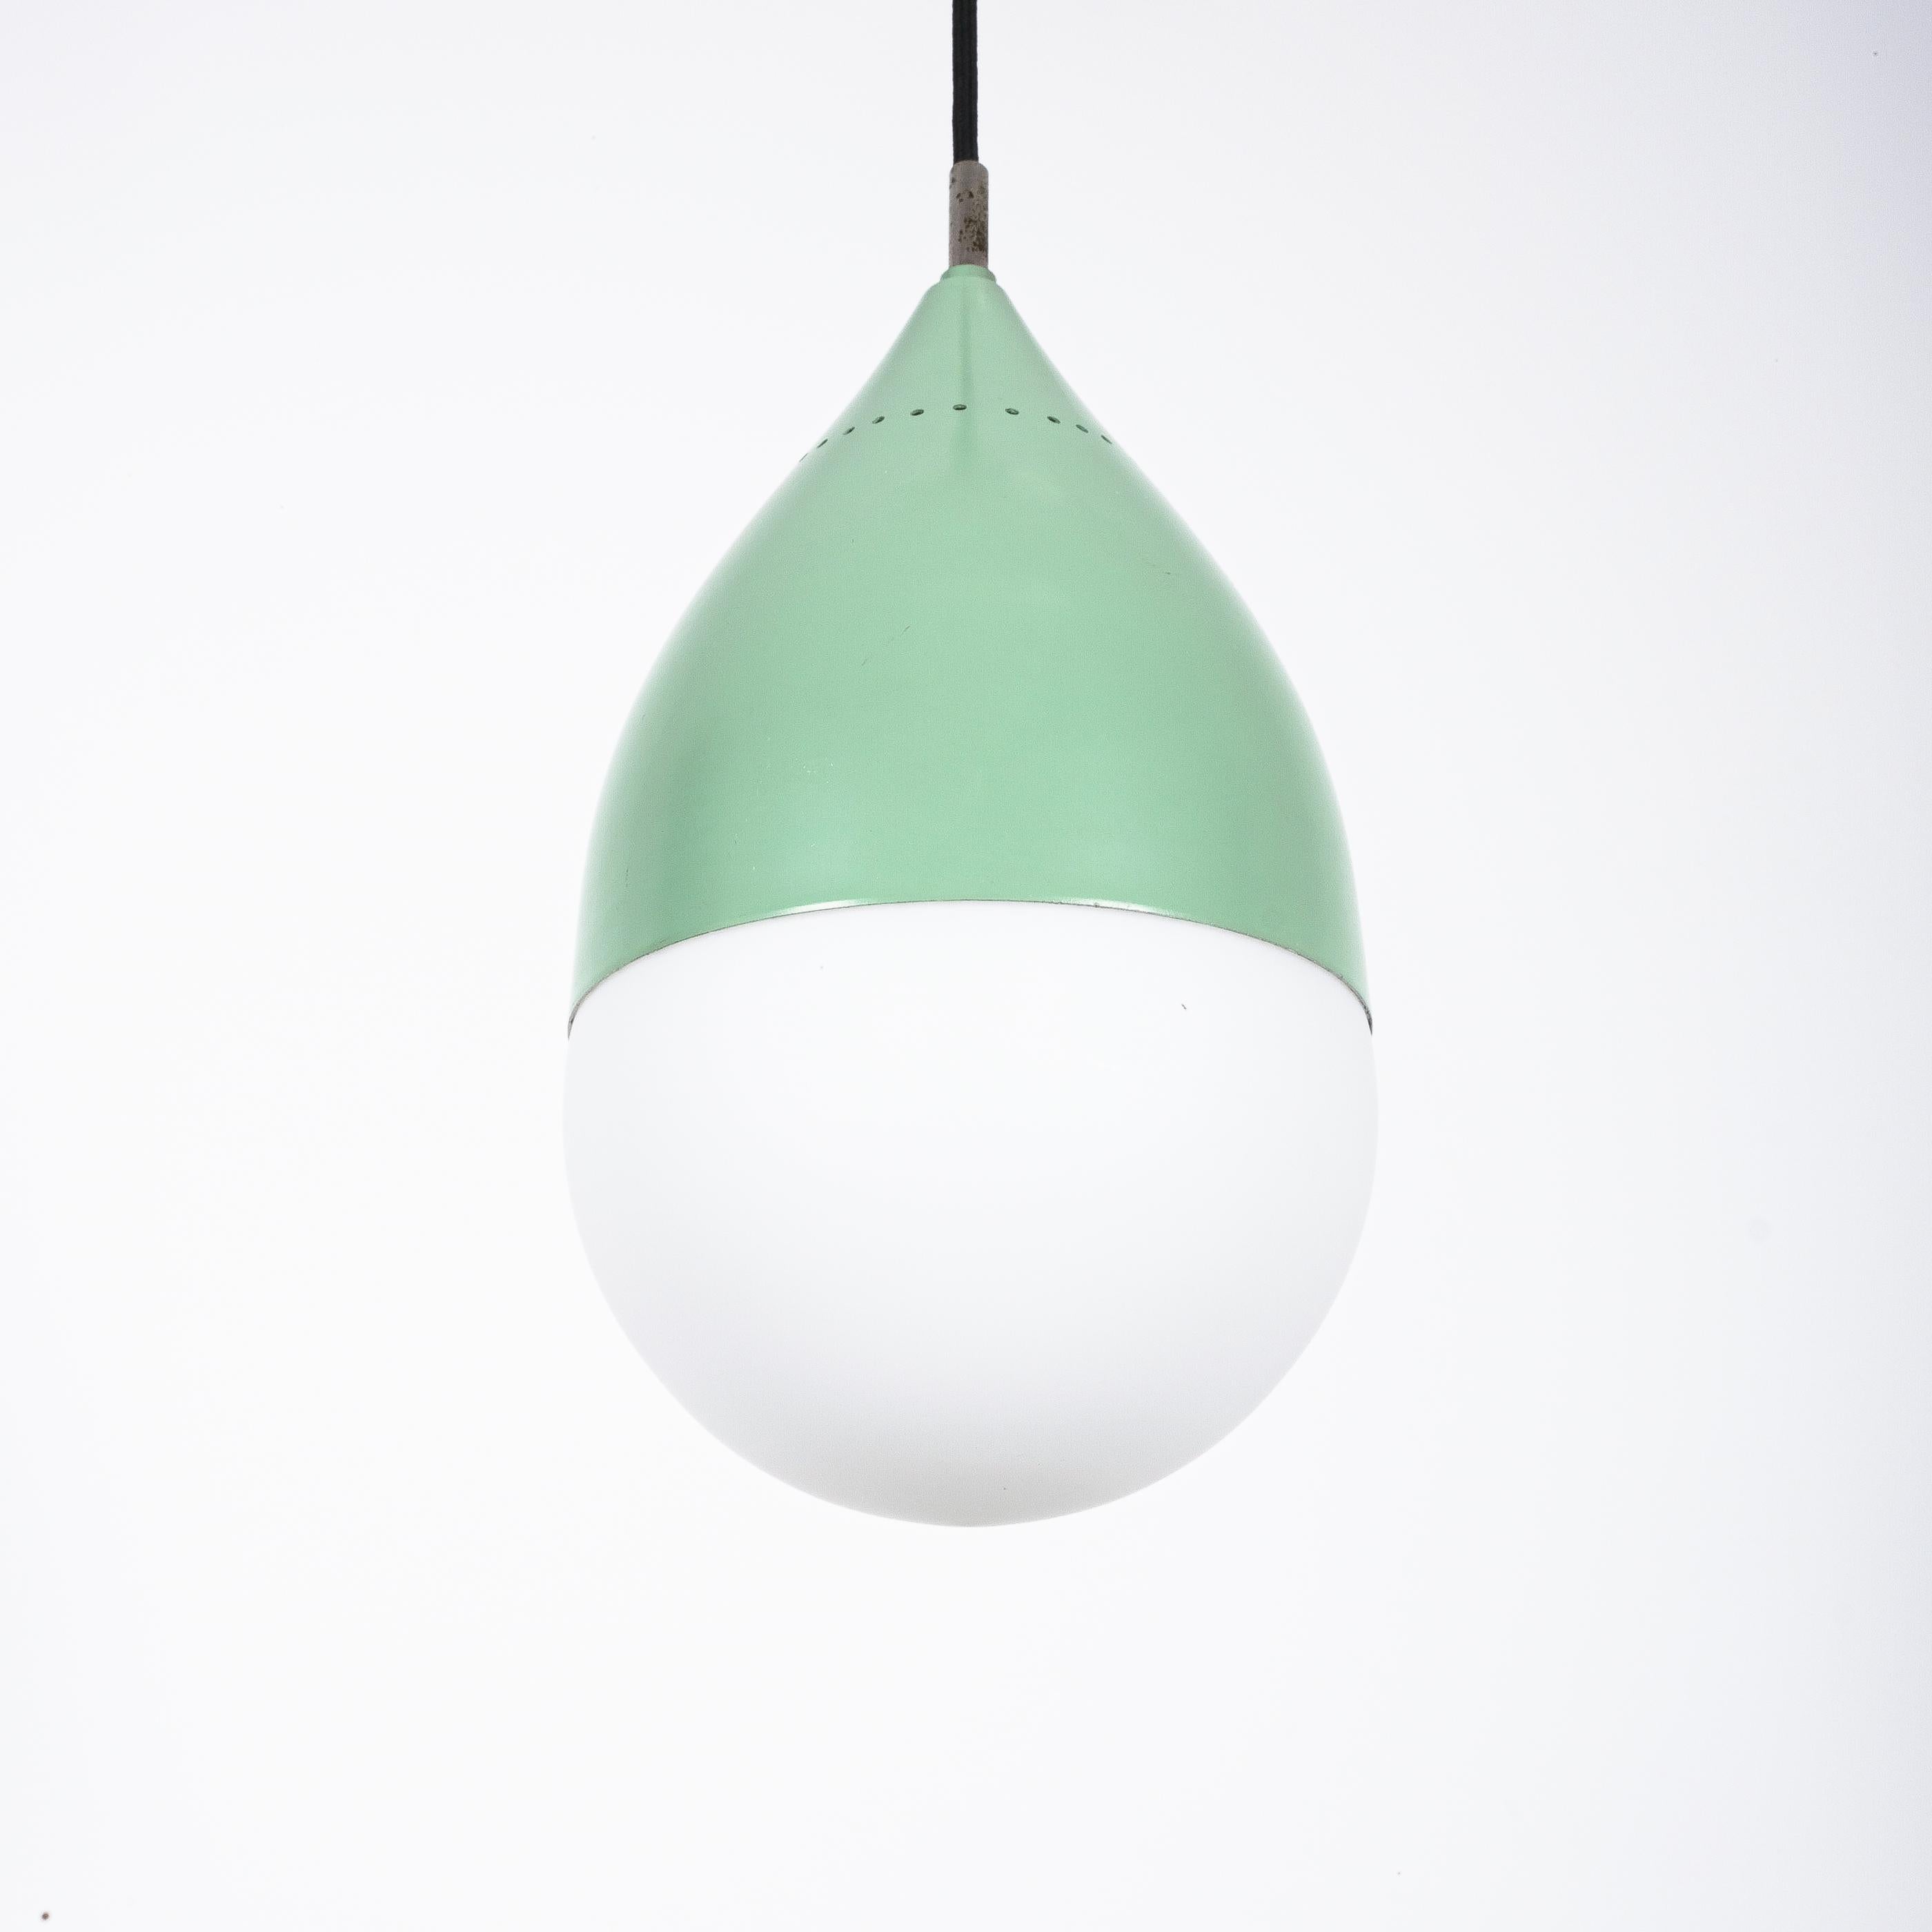 Stilnovo pendentif boule en forme de poire verre satiné, Italie, vers 1950

Suspension verte Celeste de la marque italienne Stilnovo. Belle suspension avec une tête en aluminium laqué en forme de trompette. Il est en bon à très bon état, avec une